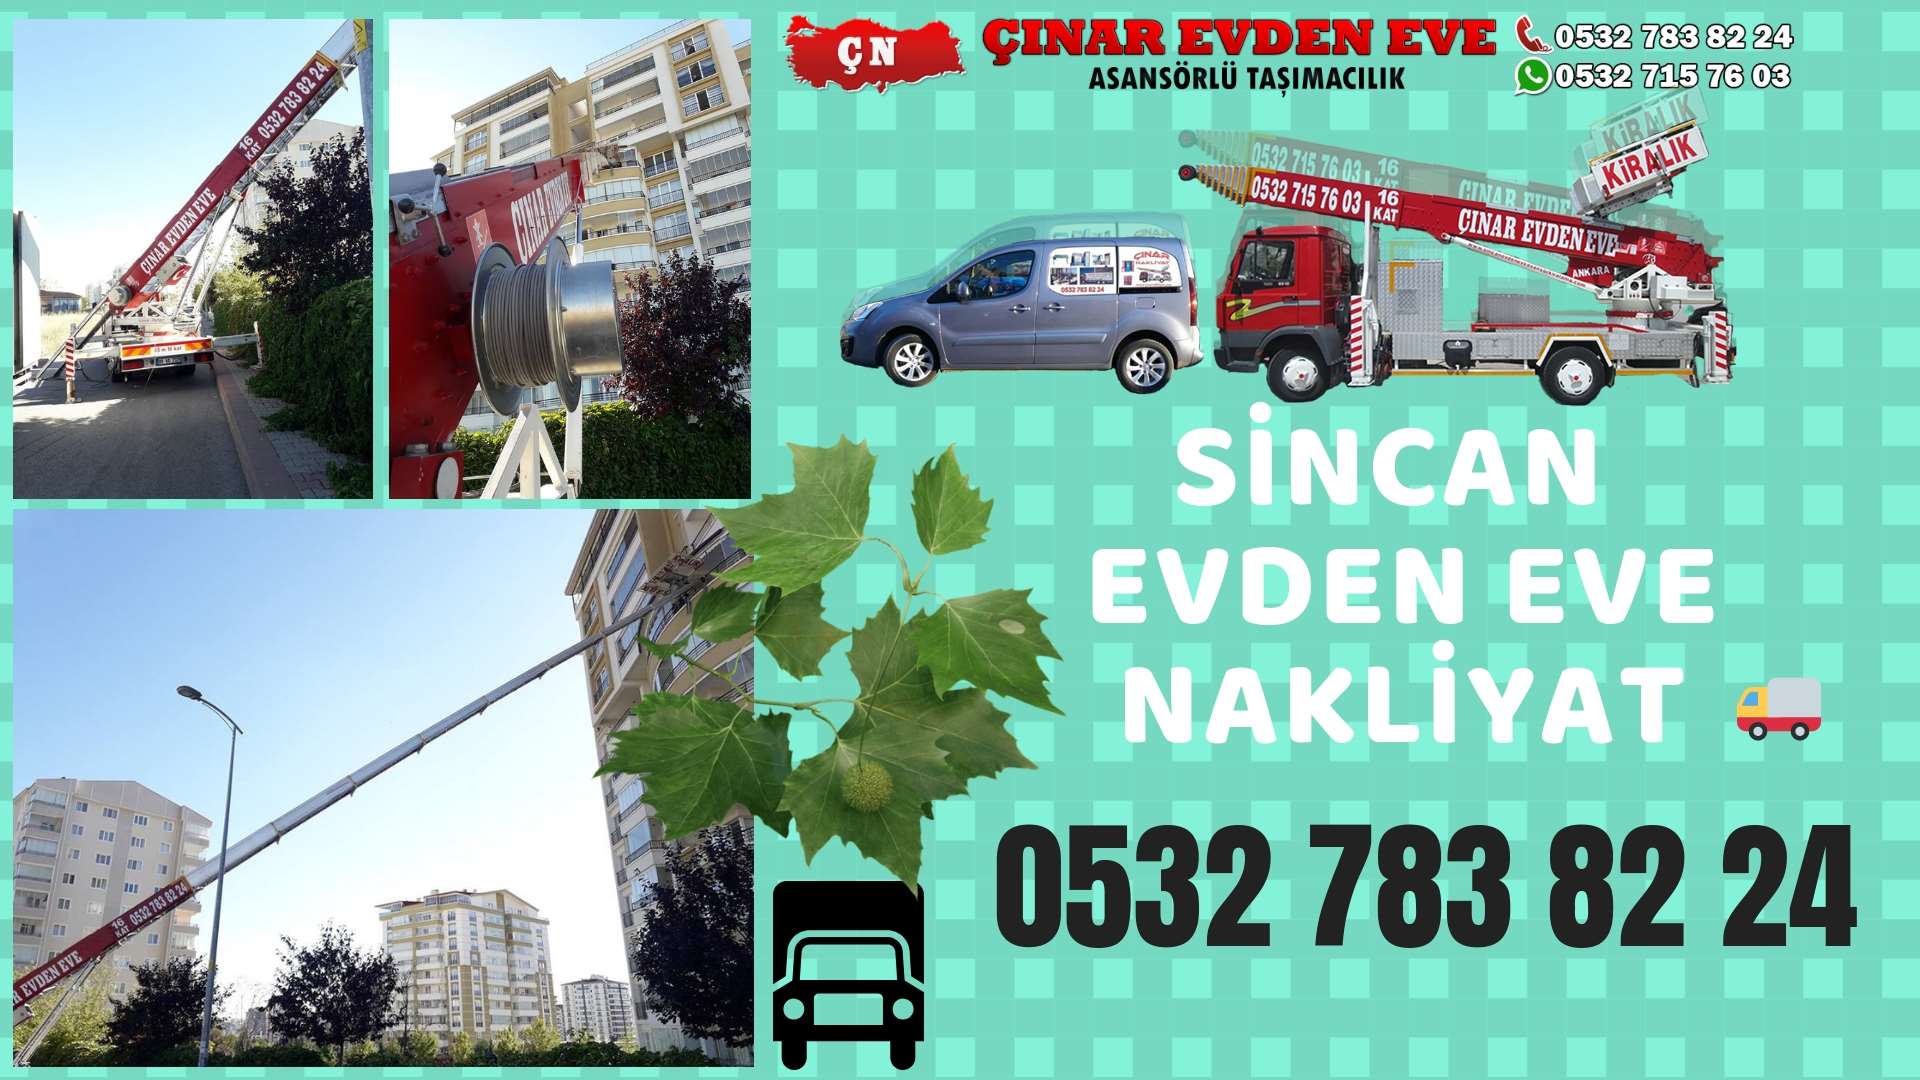 Ankara Mamak sincan ev eşya taşımacılığı, sincan evden eve 0532 715 76 03